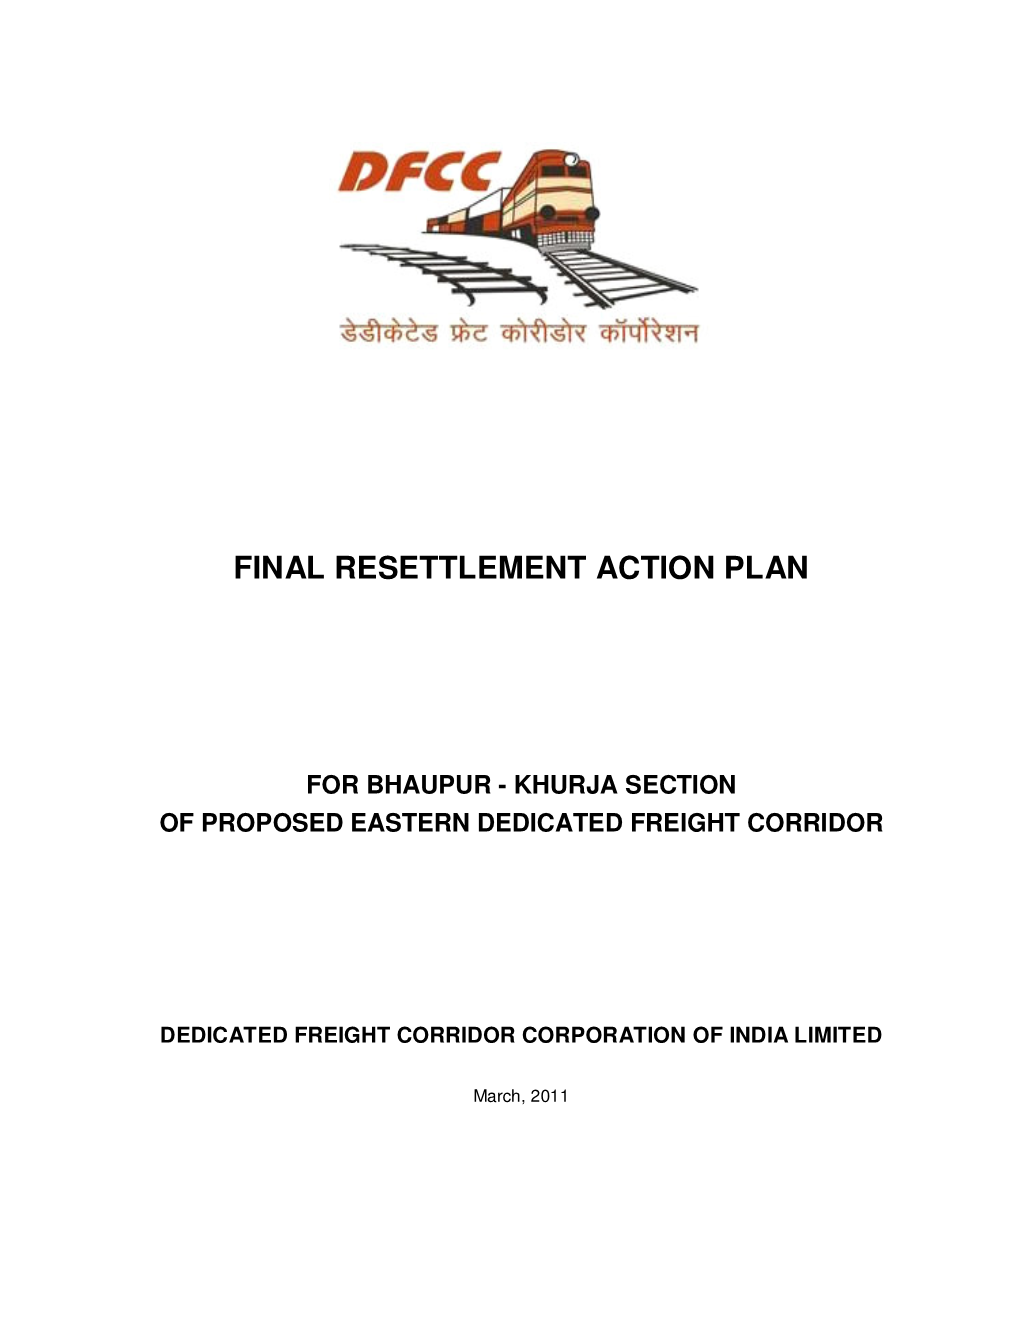 Final Resettlement Action Plan